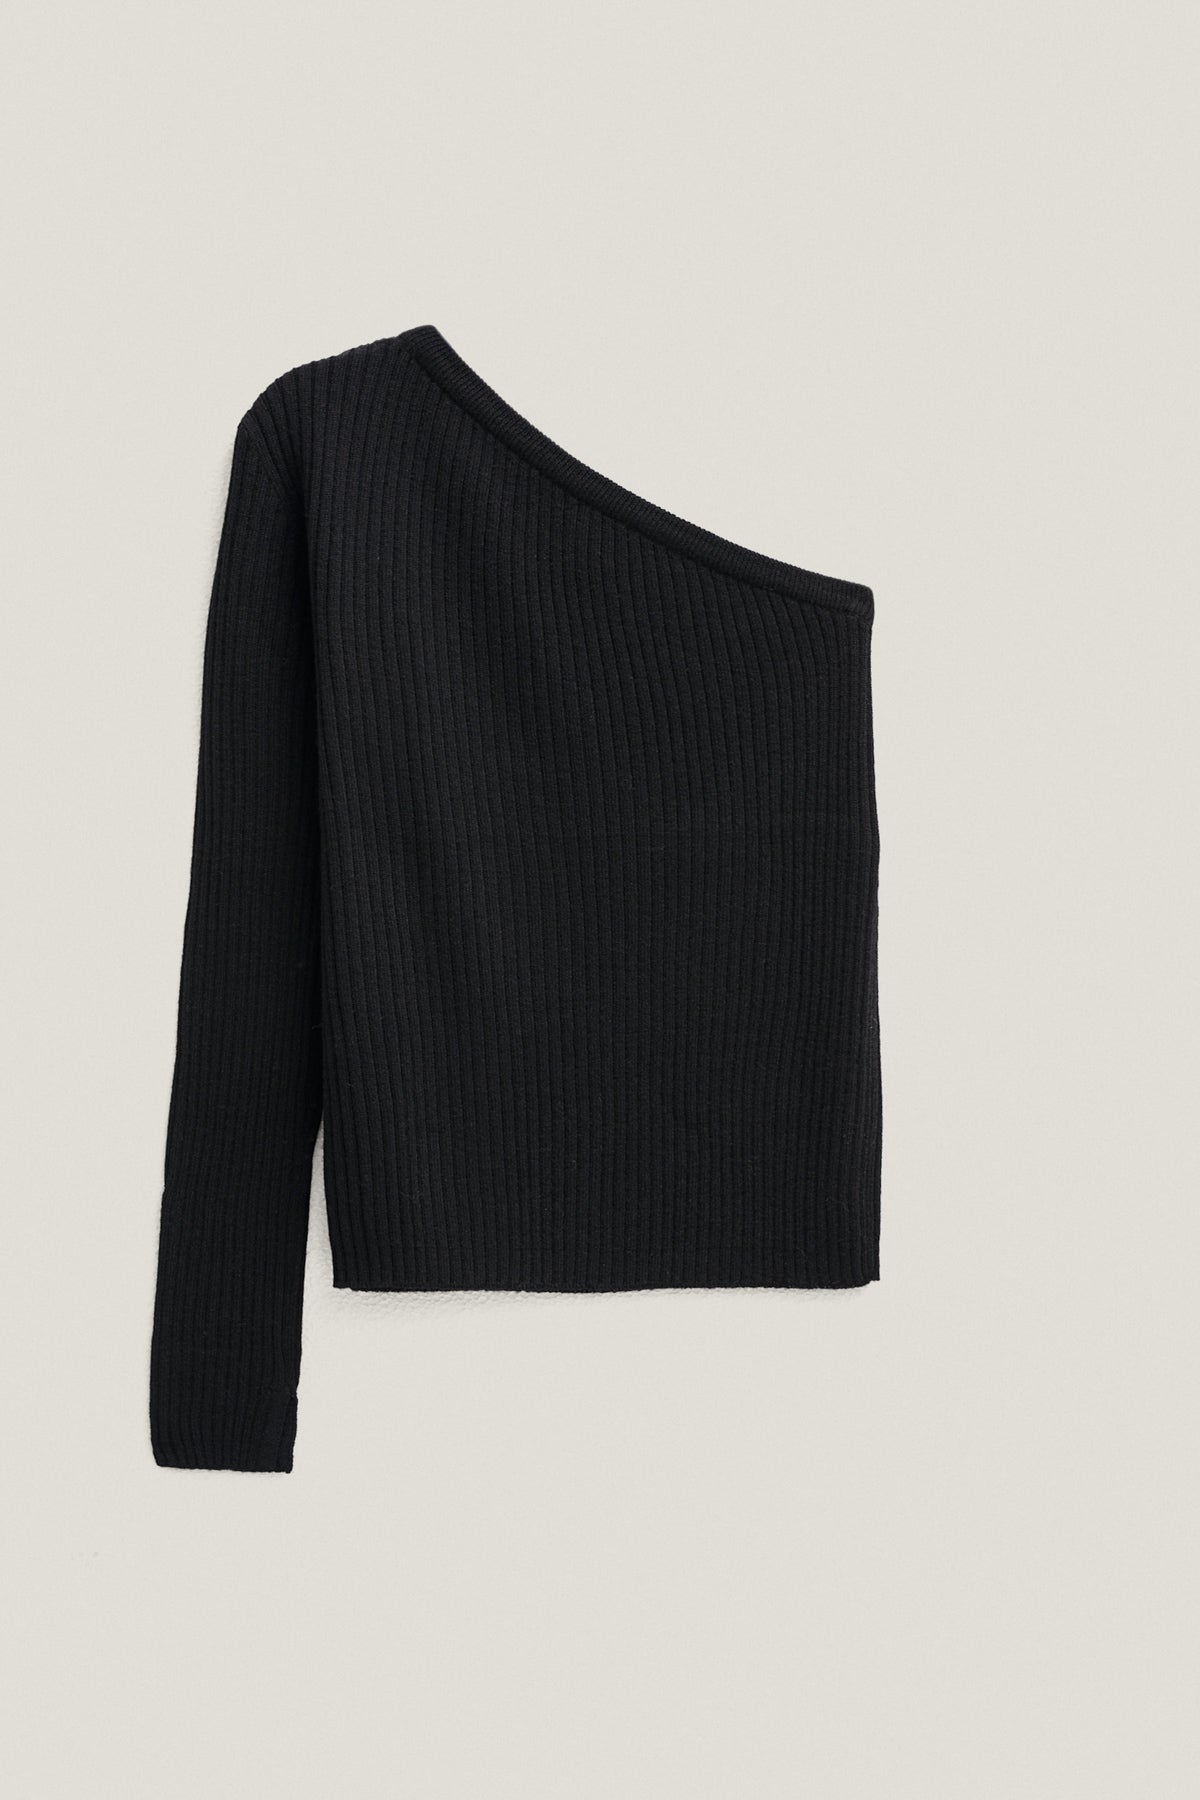 Black | The Merino Wool One-Shoulder Top